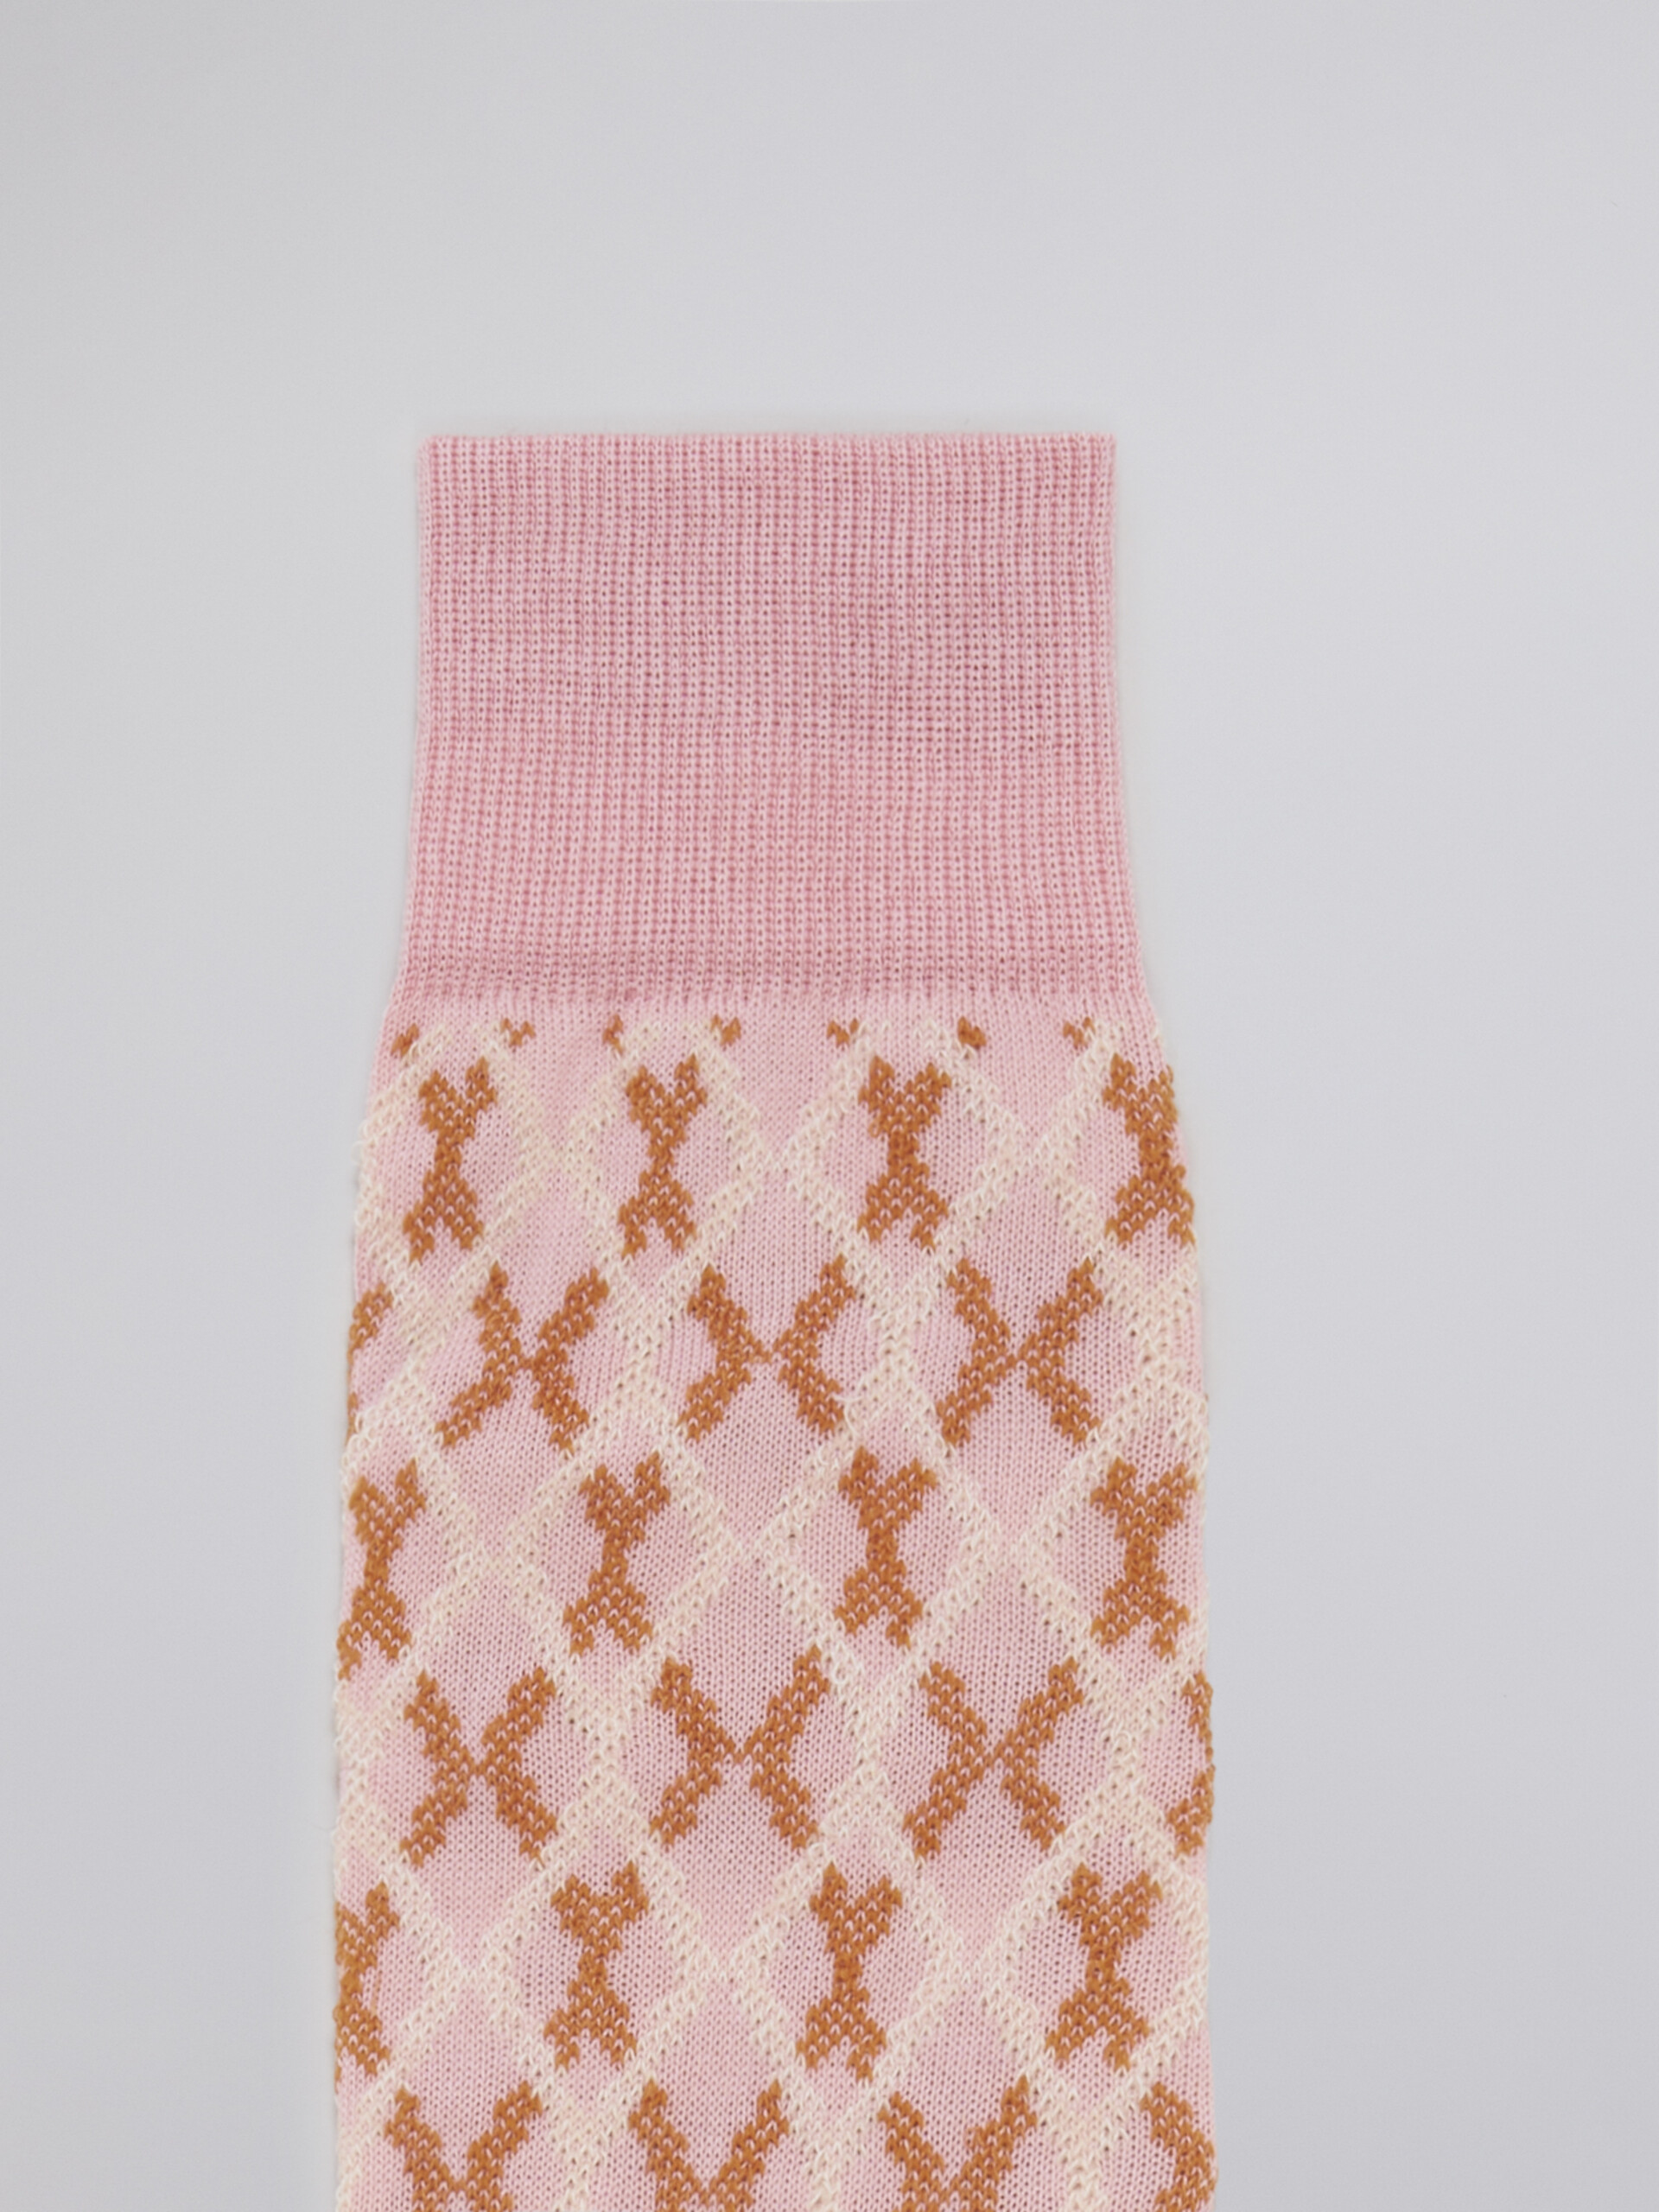 Calza in cotone jacquard e nylon disegno micro riquadro rosa - Calze - Image 3